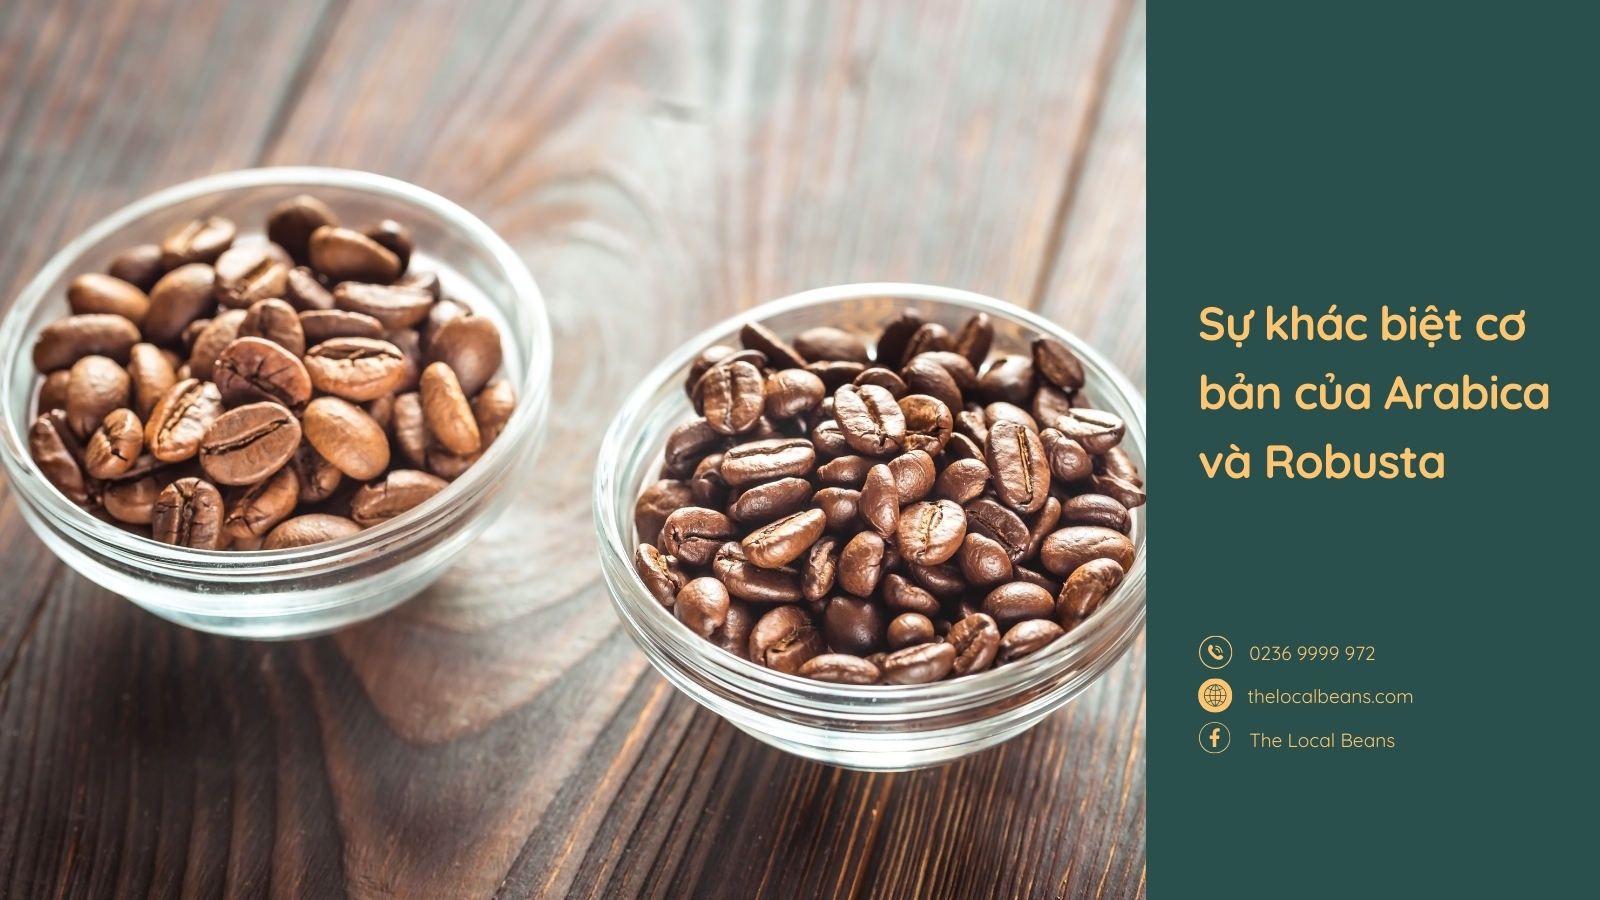 hai chén hạt cà phê arabica và robusta, thê rhienej rõ đặc điểm cà phê arabica và robusta là khác nhau